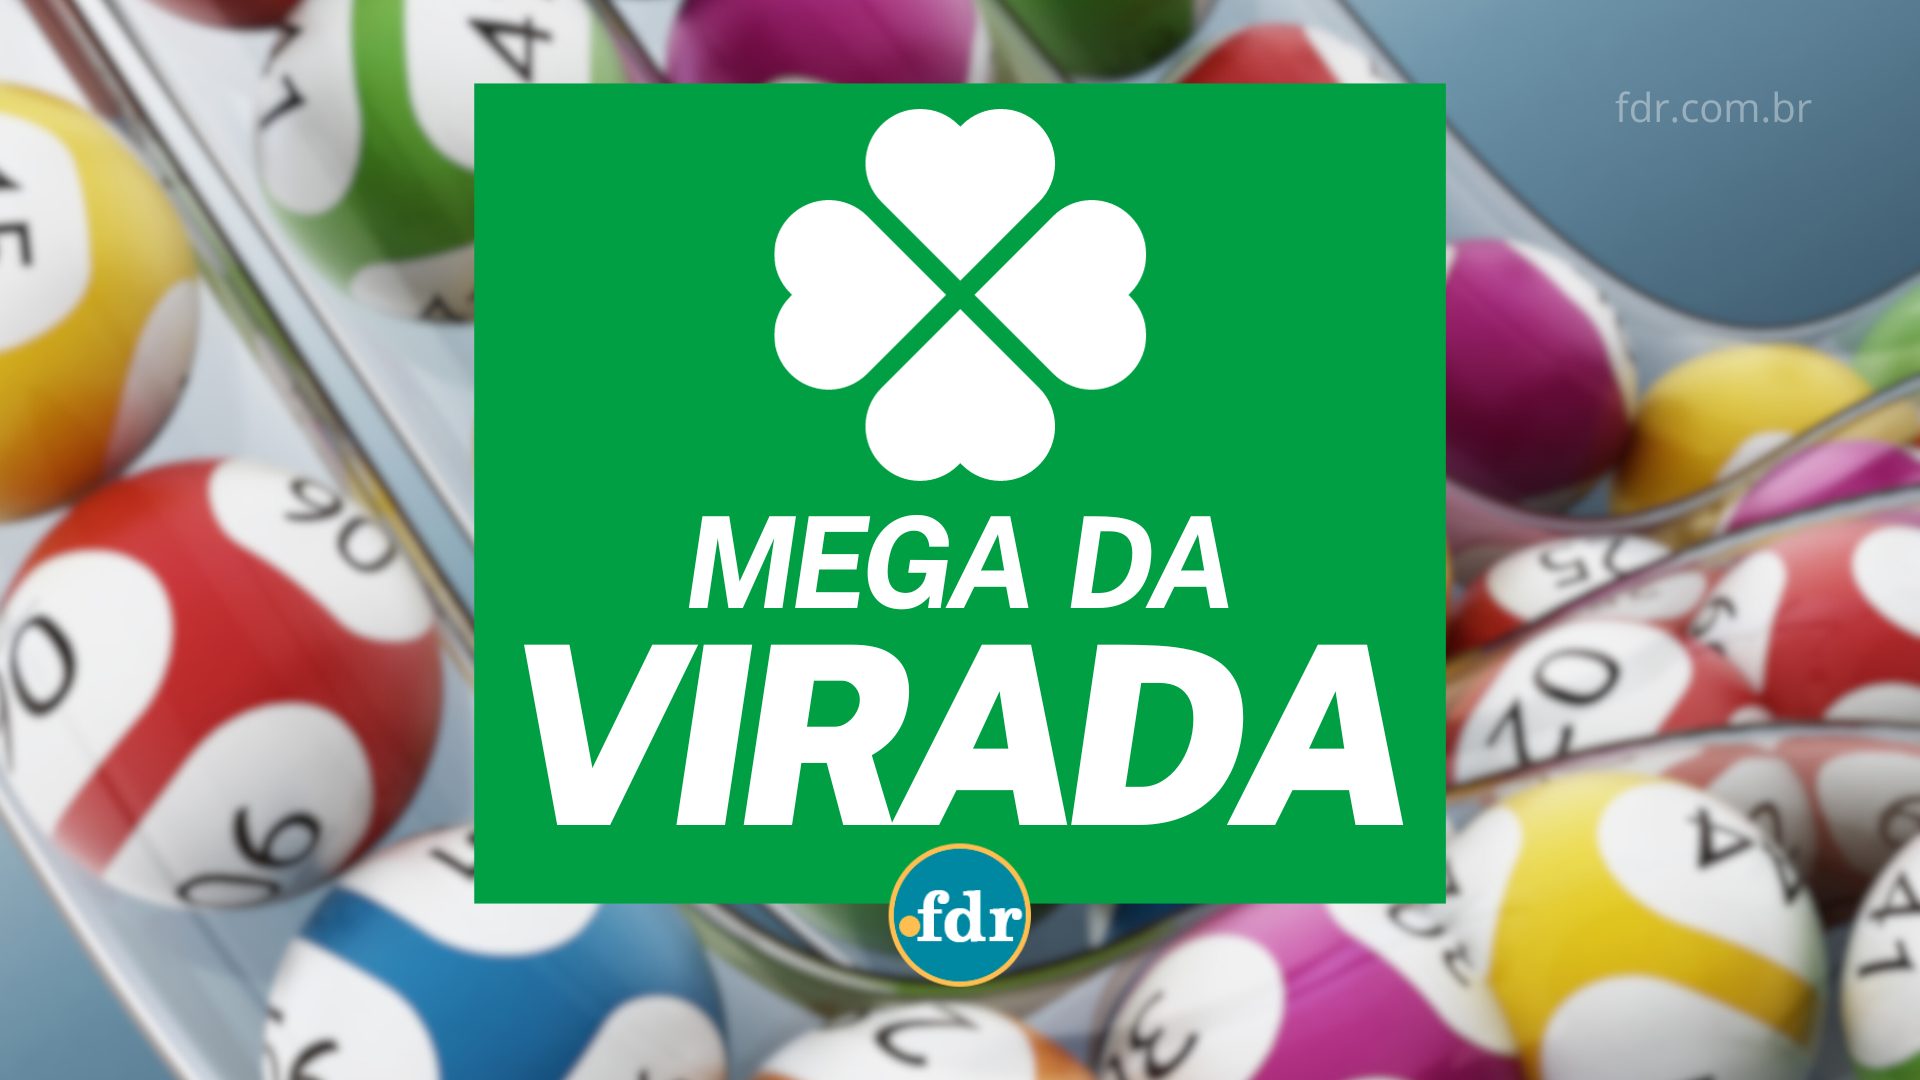 Mega da Virada: Veja das 5 fake news espalhadas sobre a loteria